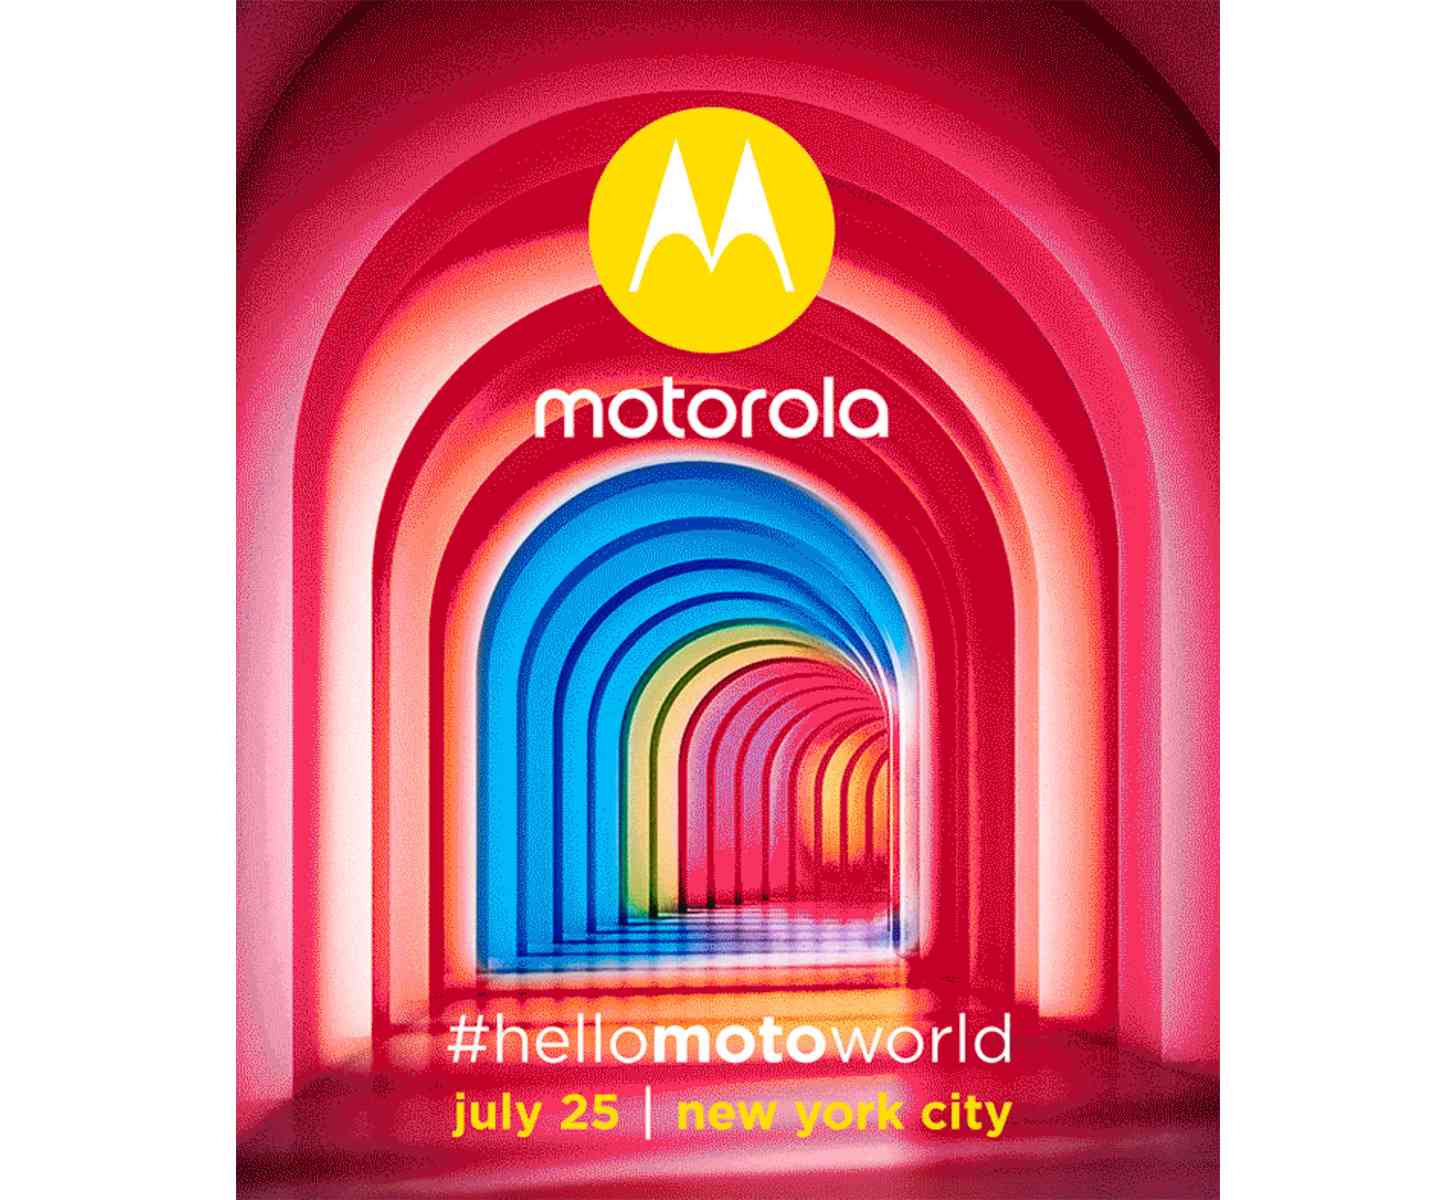 Motorola event #hellomotoworld July 25 NYC